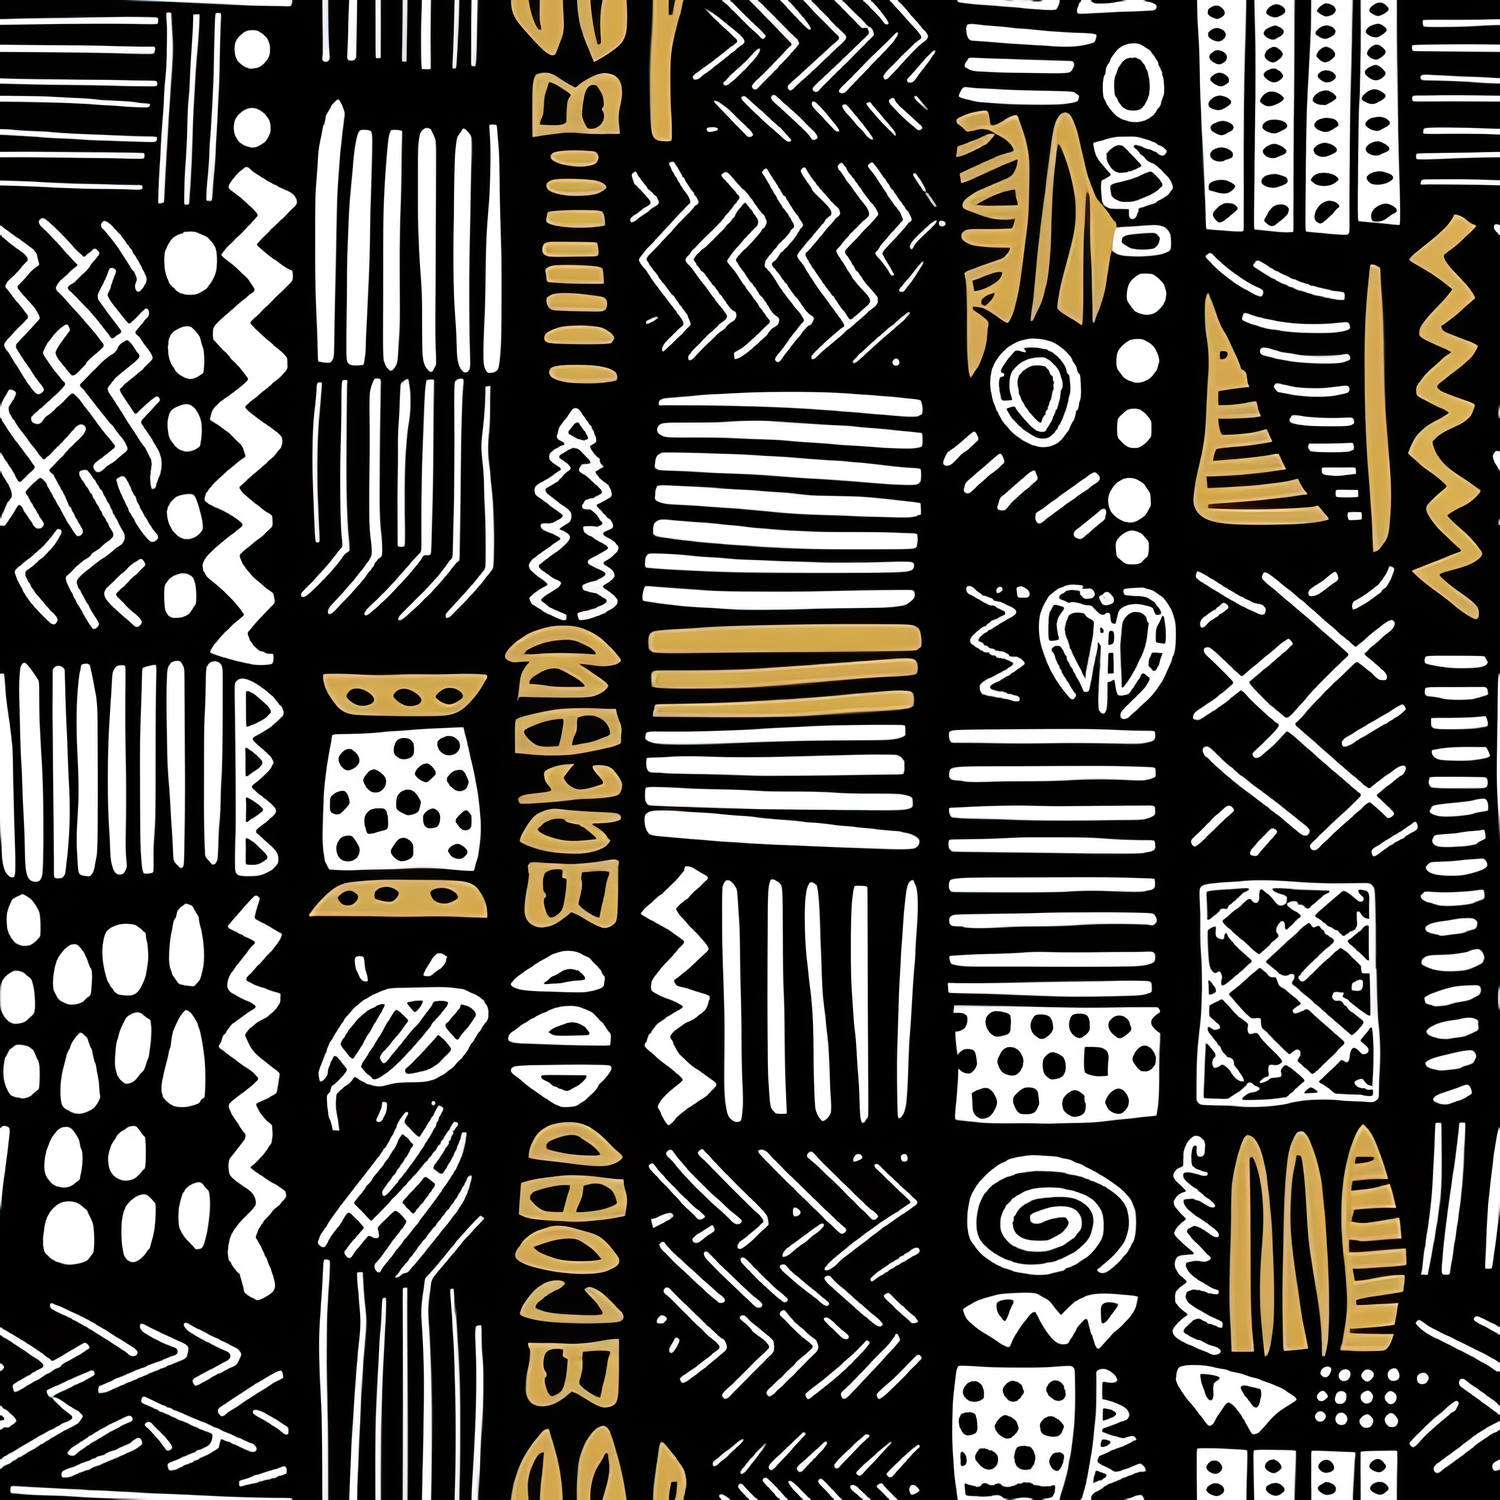 The Original - Handmade African Fabric Journals